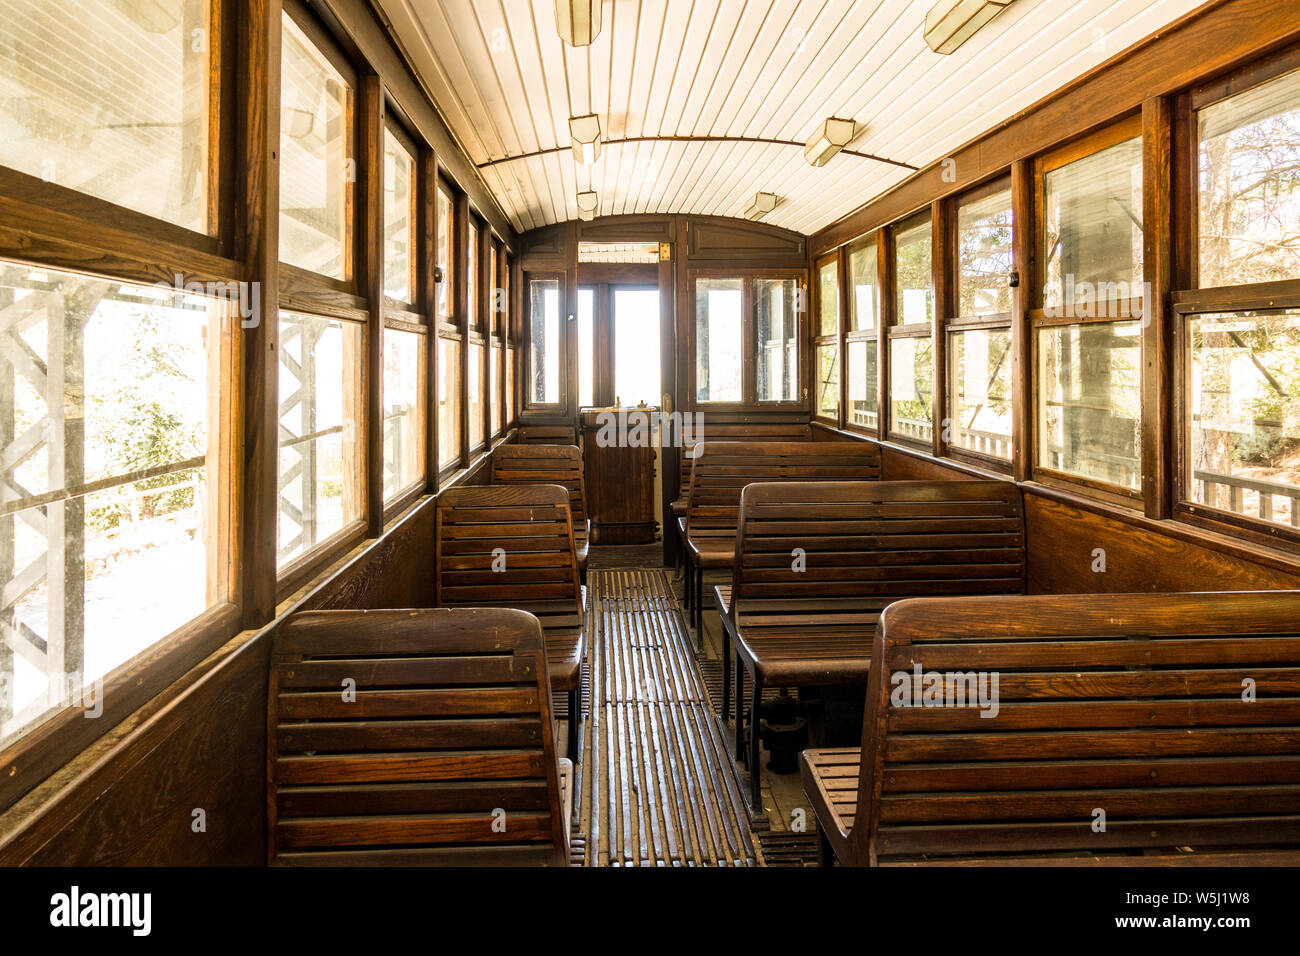 Intérieur de l'ancien tramway, utilisé dans les montagnes de la Sierra Nevada, en Espagne. Banque D'Images